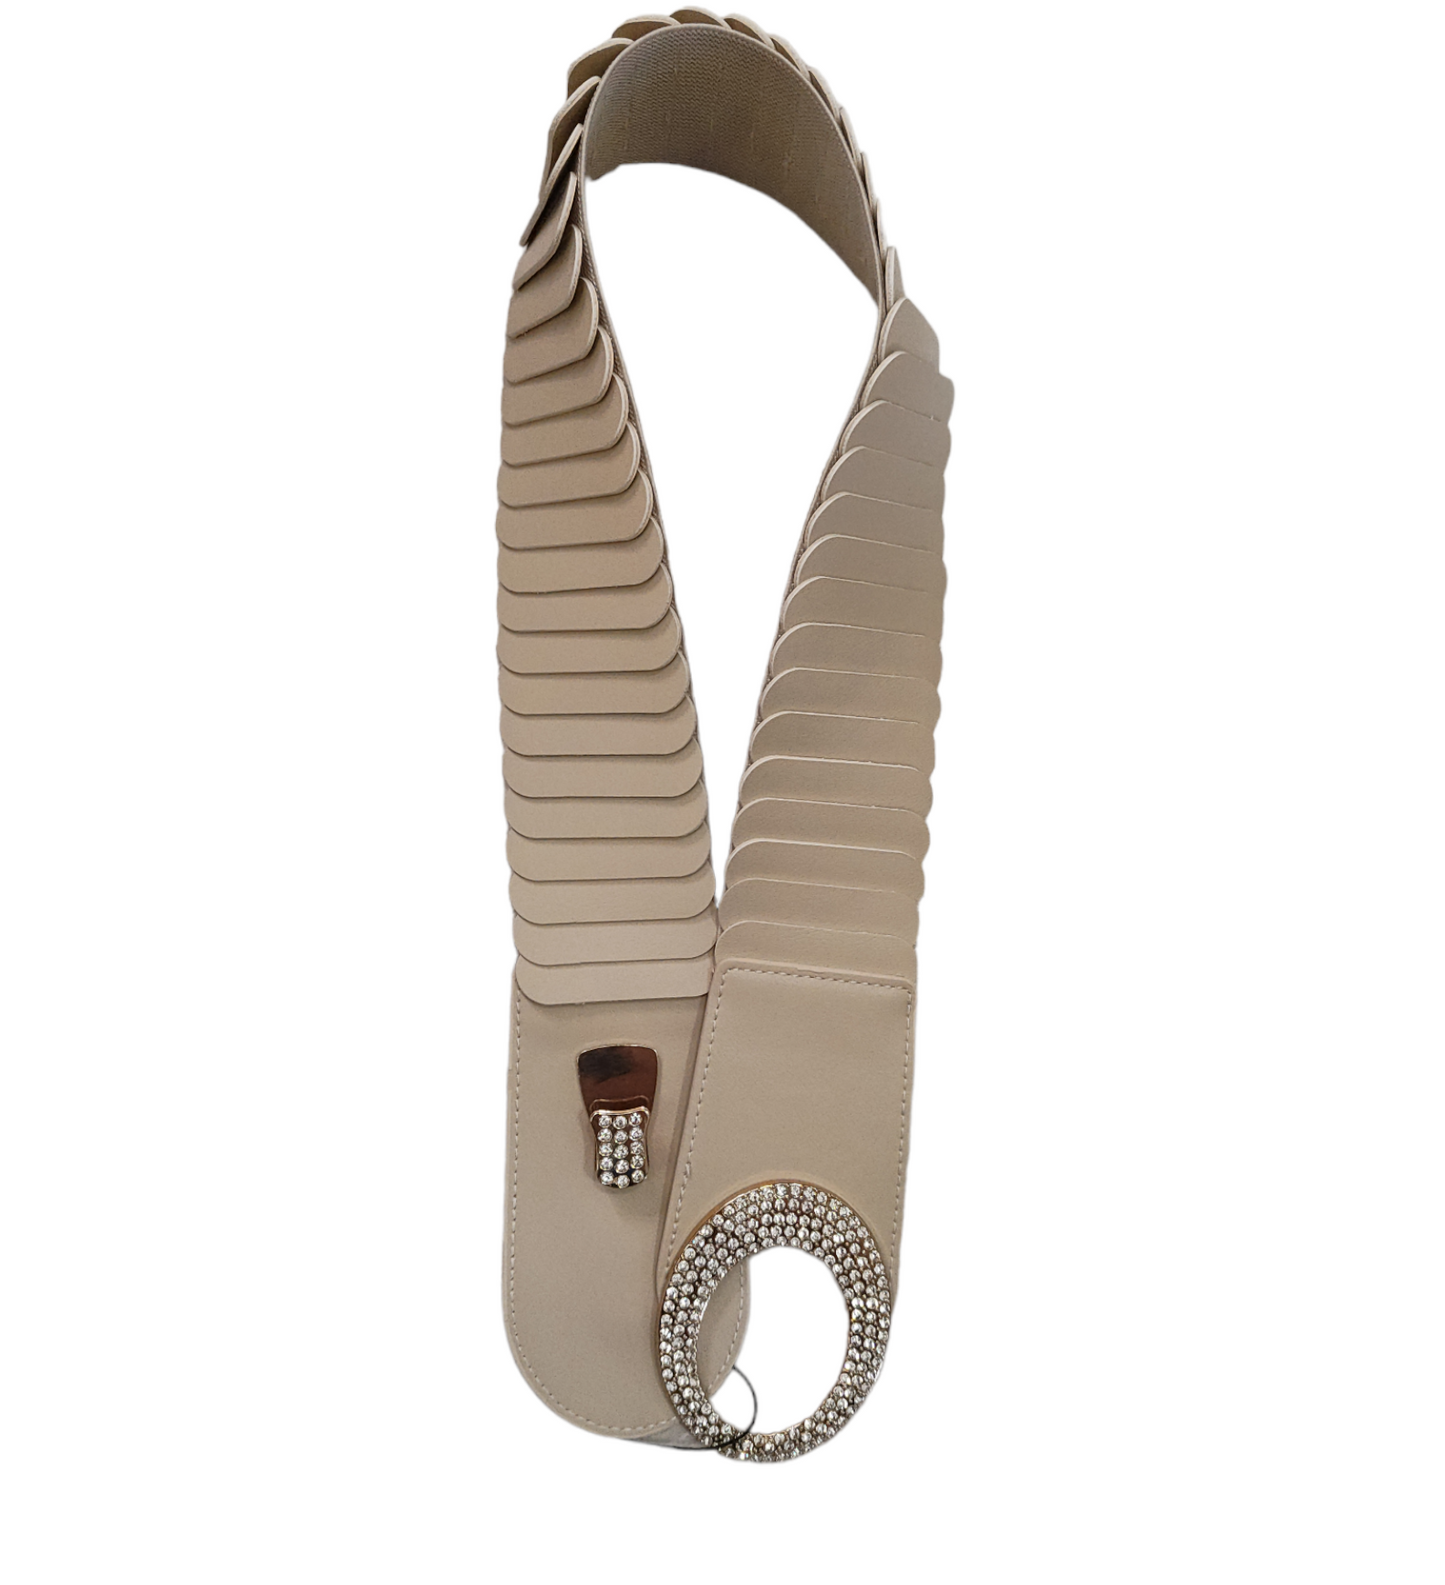 Cintura Donna a Fascia Elasticizzata con Fibbia Ovale Inserti in Eco Pelle e Strass